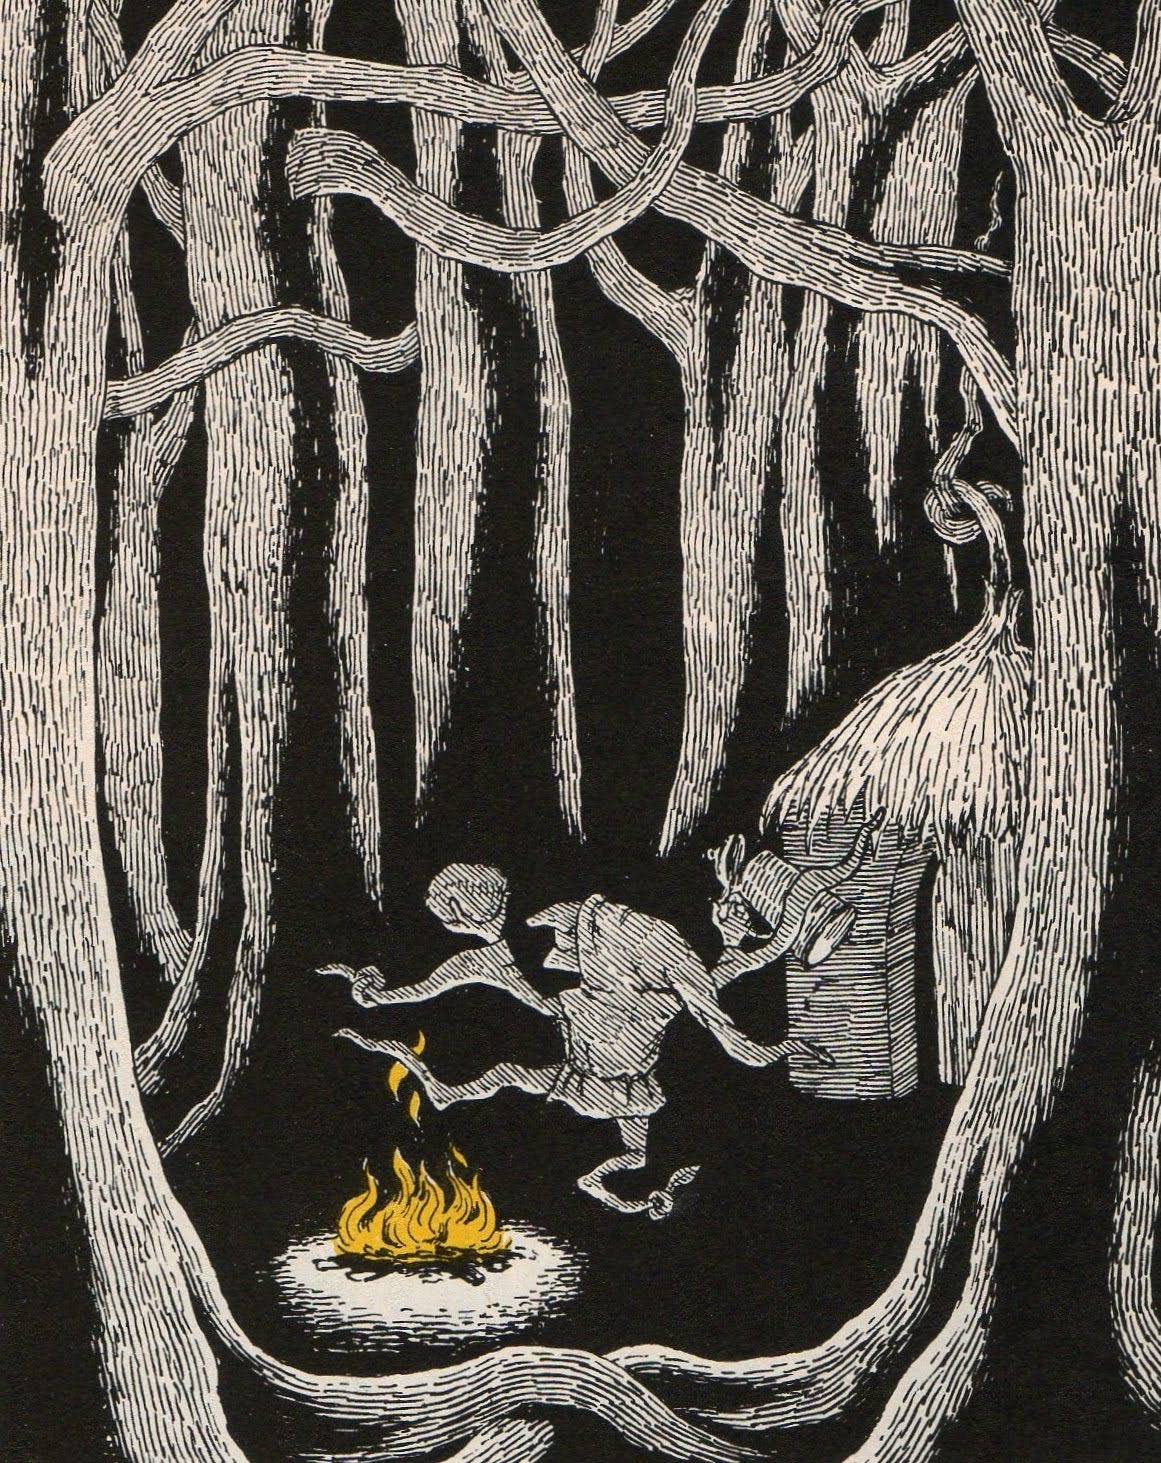 Illustrazione in inchiostro con un folletto che balla attorno al fuoco, in una foresta, davanti a una capanna. Tutti gli elementi sono in bianco e nero, tranne il fuoco che è giallo.